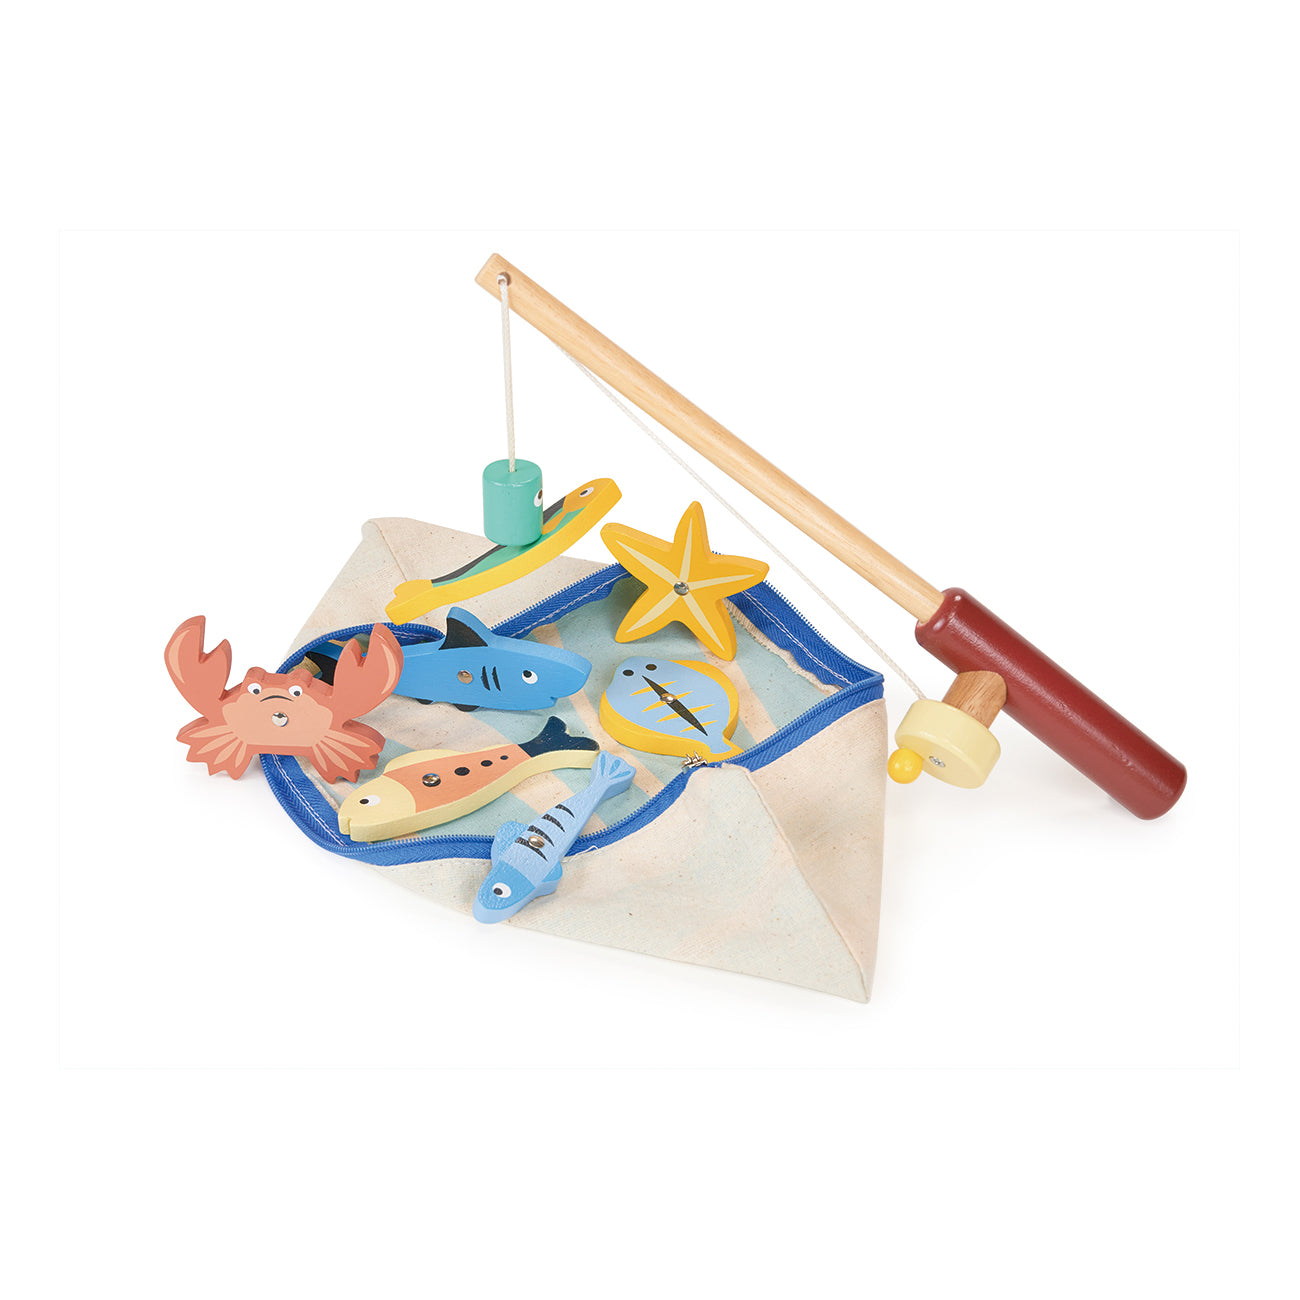 Fishing Game, Wooden Toy, Mentari